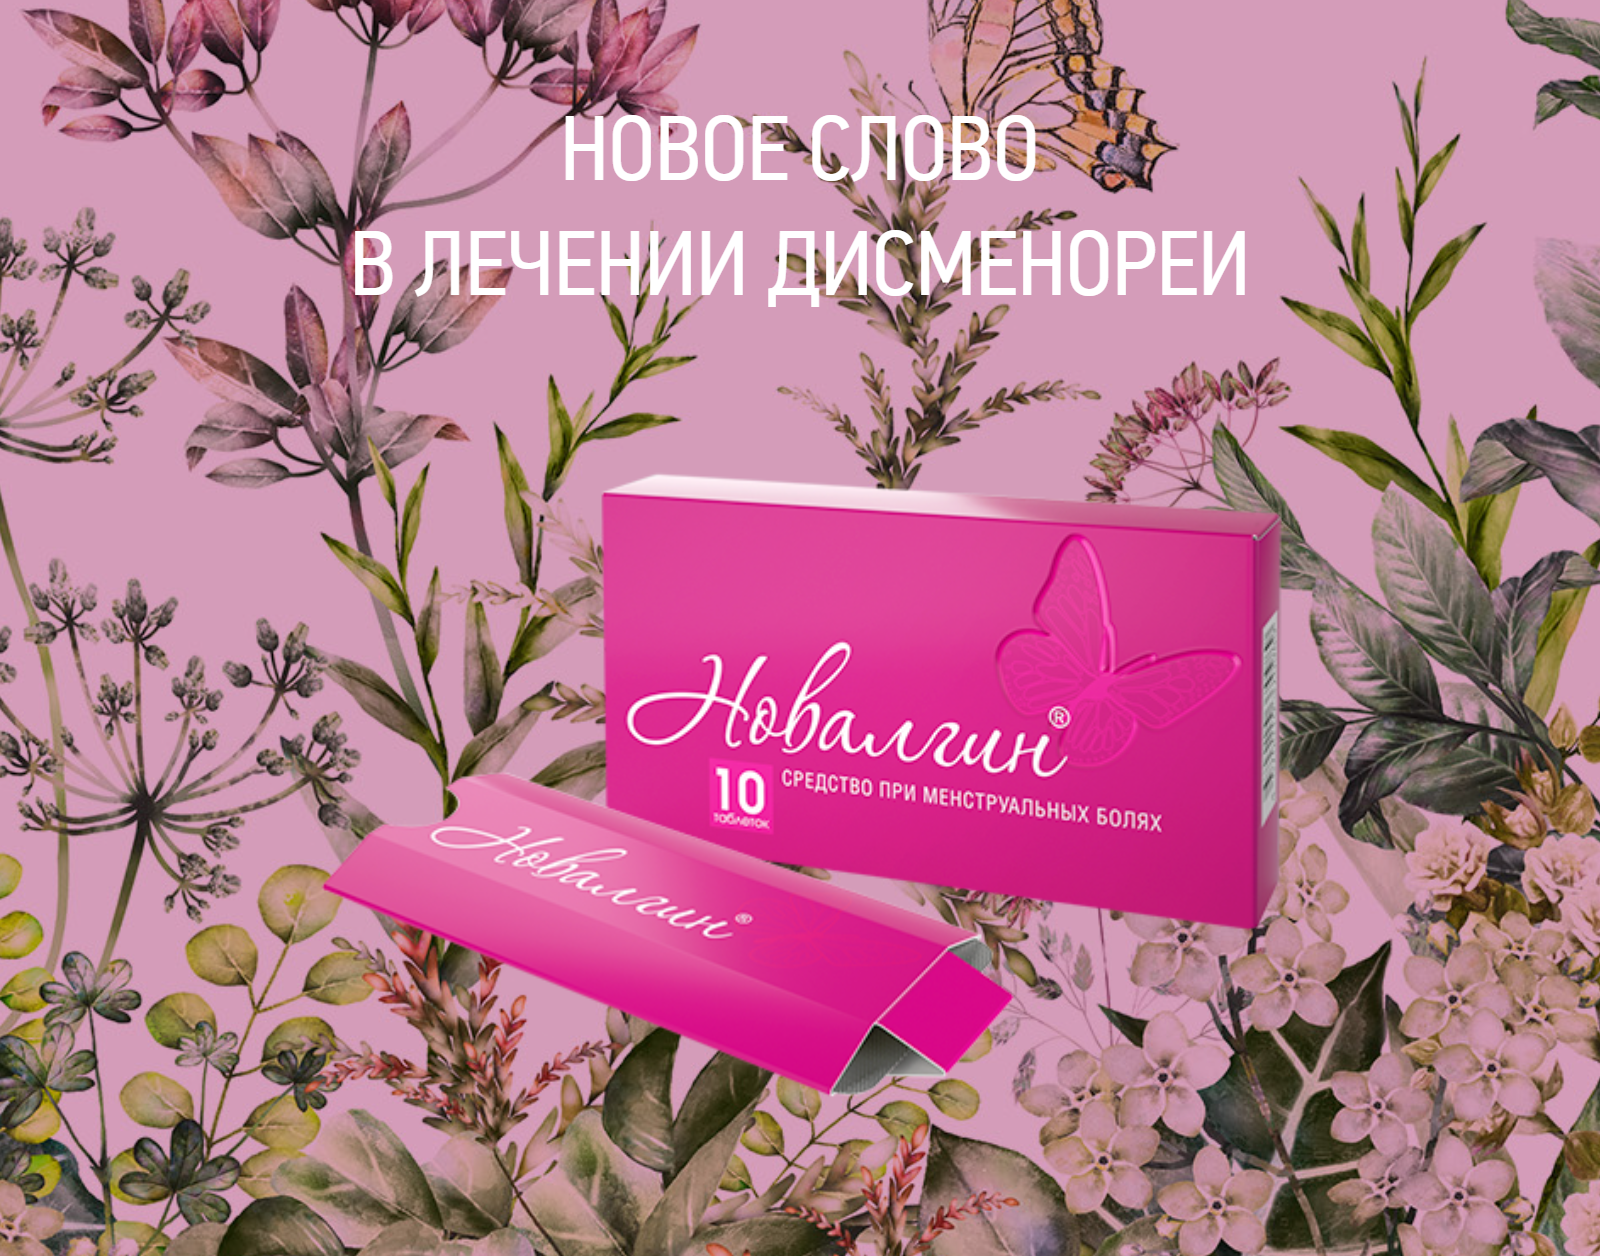 Упаковка «Новалгина» стоит минимум на 100 ₽ дороже, чем похожие средства от боли. Источник: novalgin.ru